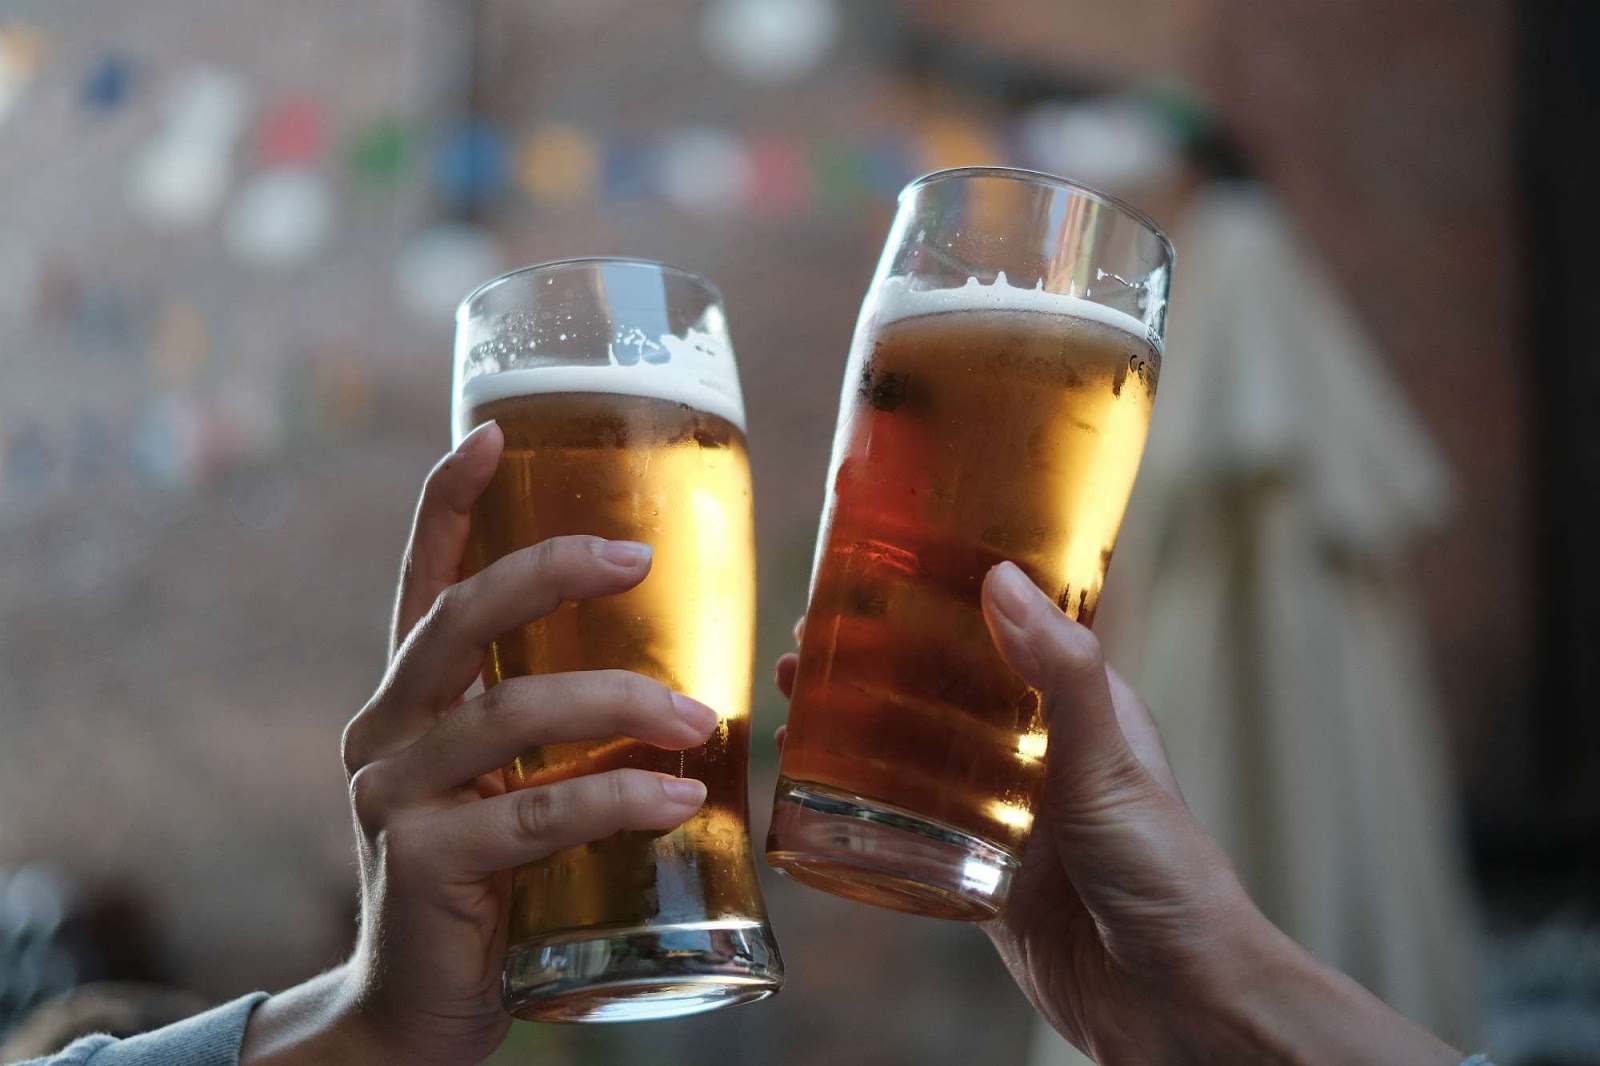 Oι επιστήμονες εξηγούν: Γι΄ αυτό η μπύρα κάνει καλό